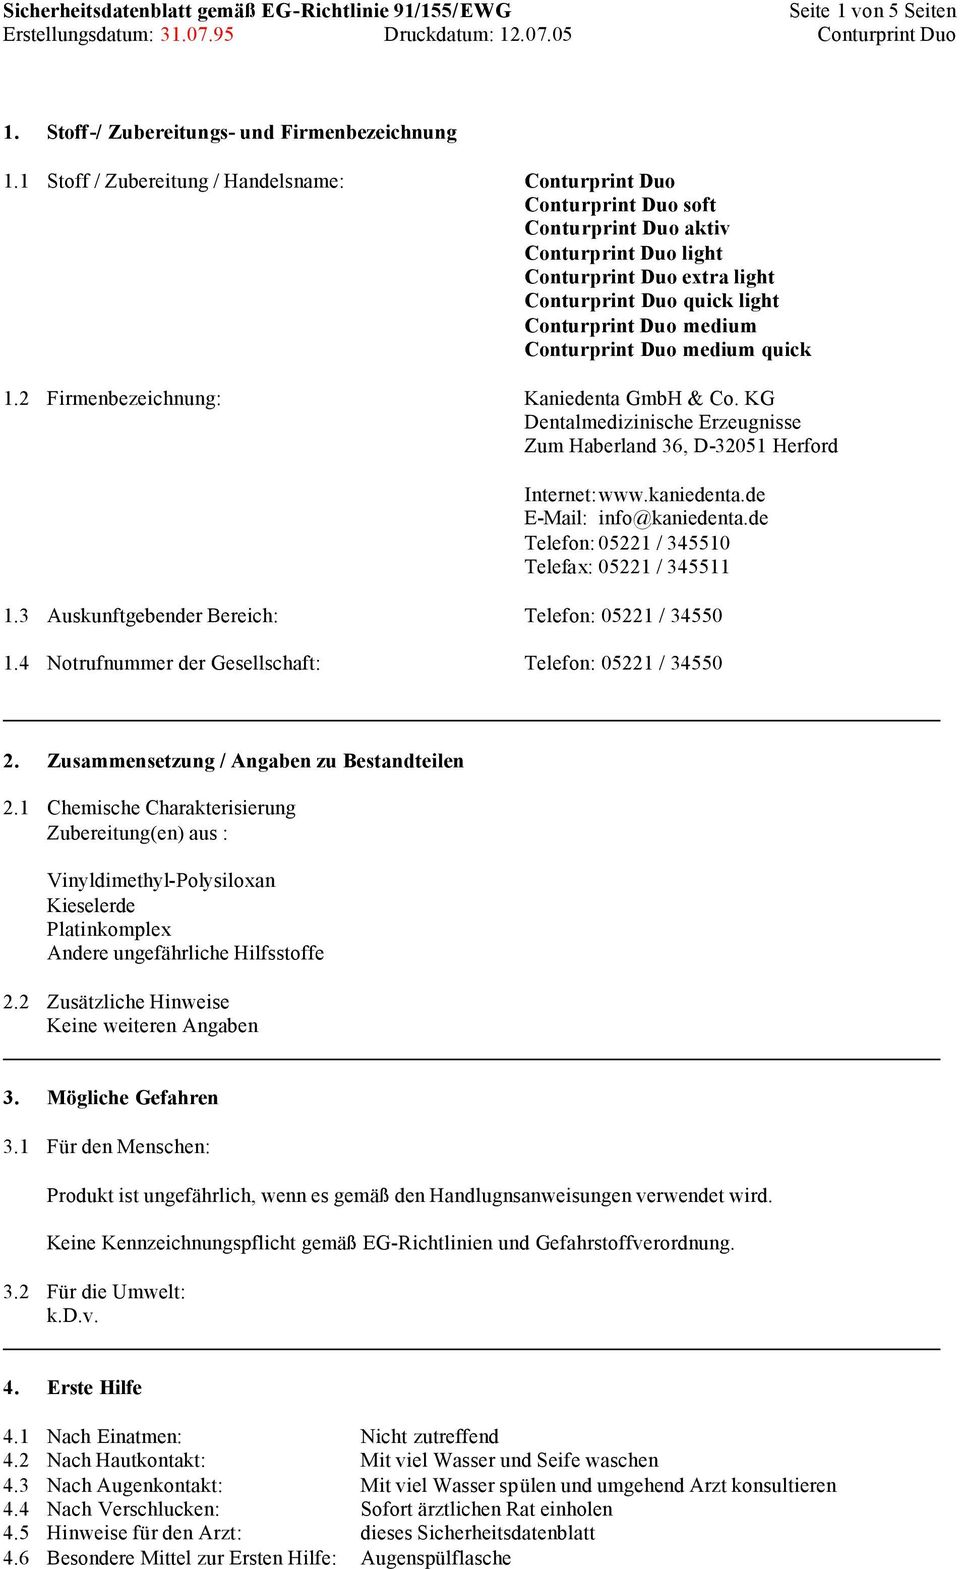 Conturprint Duo medium quick 1.2 Firmenbezeichnung: Kaniedenta GmbH & Co. KG Dentalmedizinische Erzeugnisse Zum Haberland 36, D-32051 Herford Internet: www.kaniedenta.de E-Mail: info@kaniedenta.